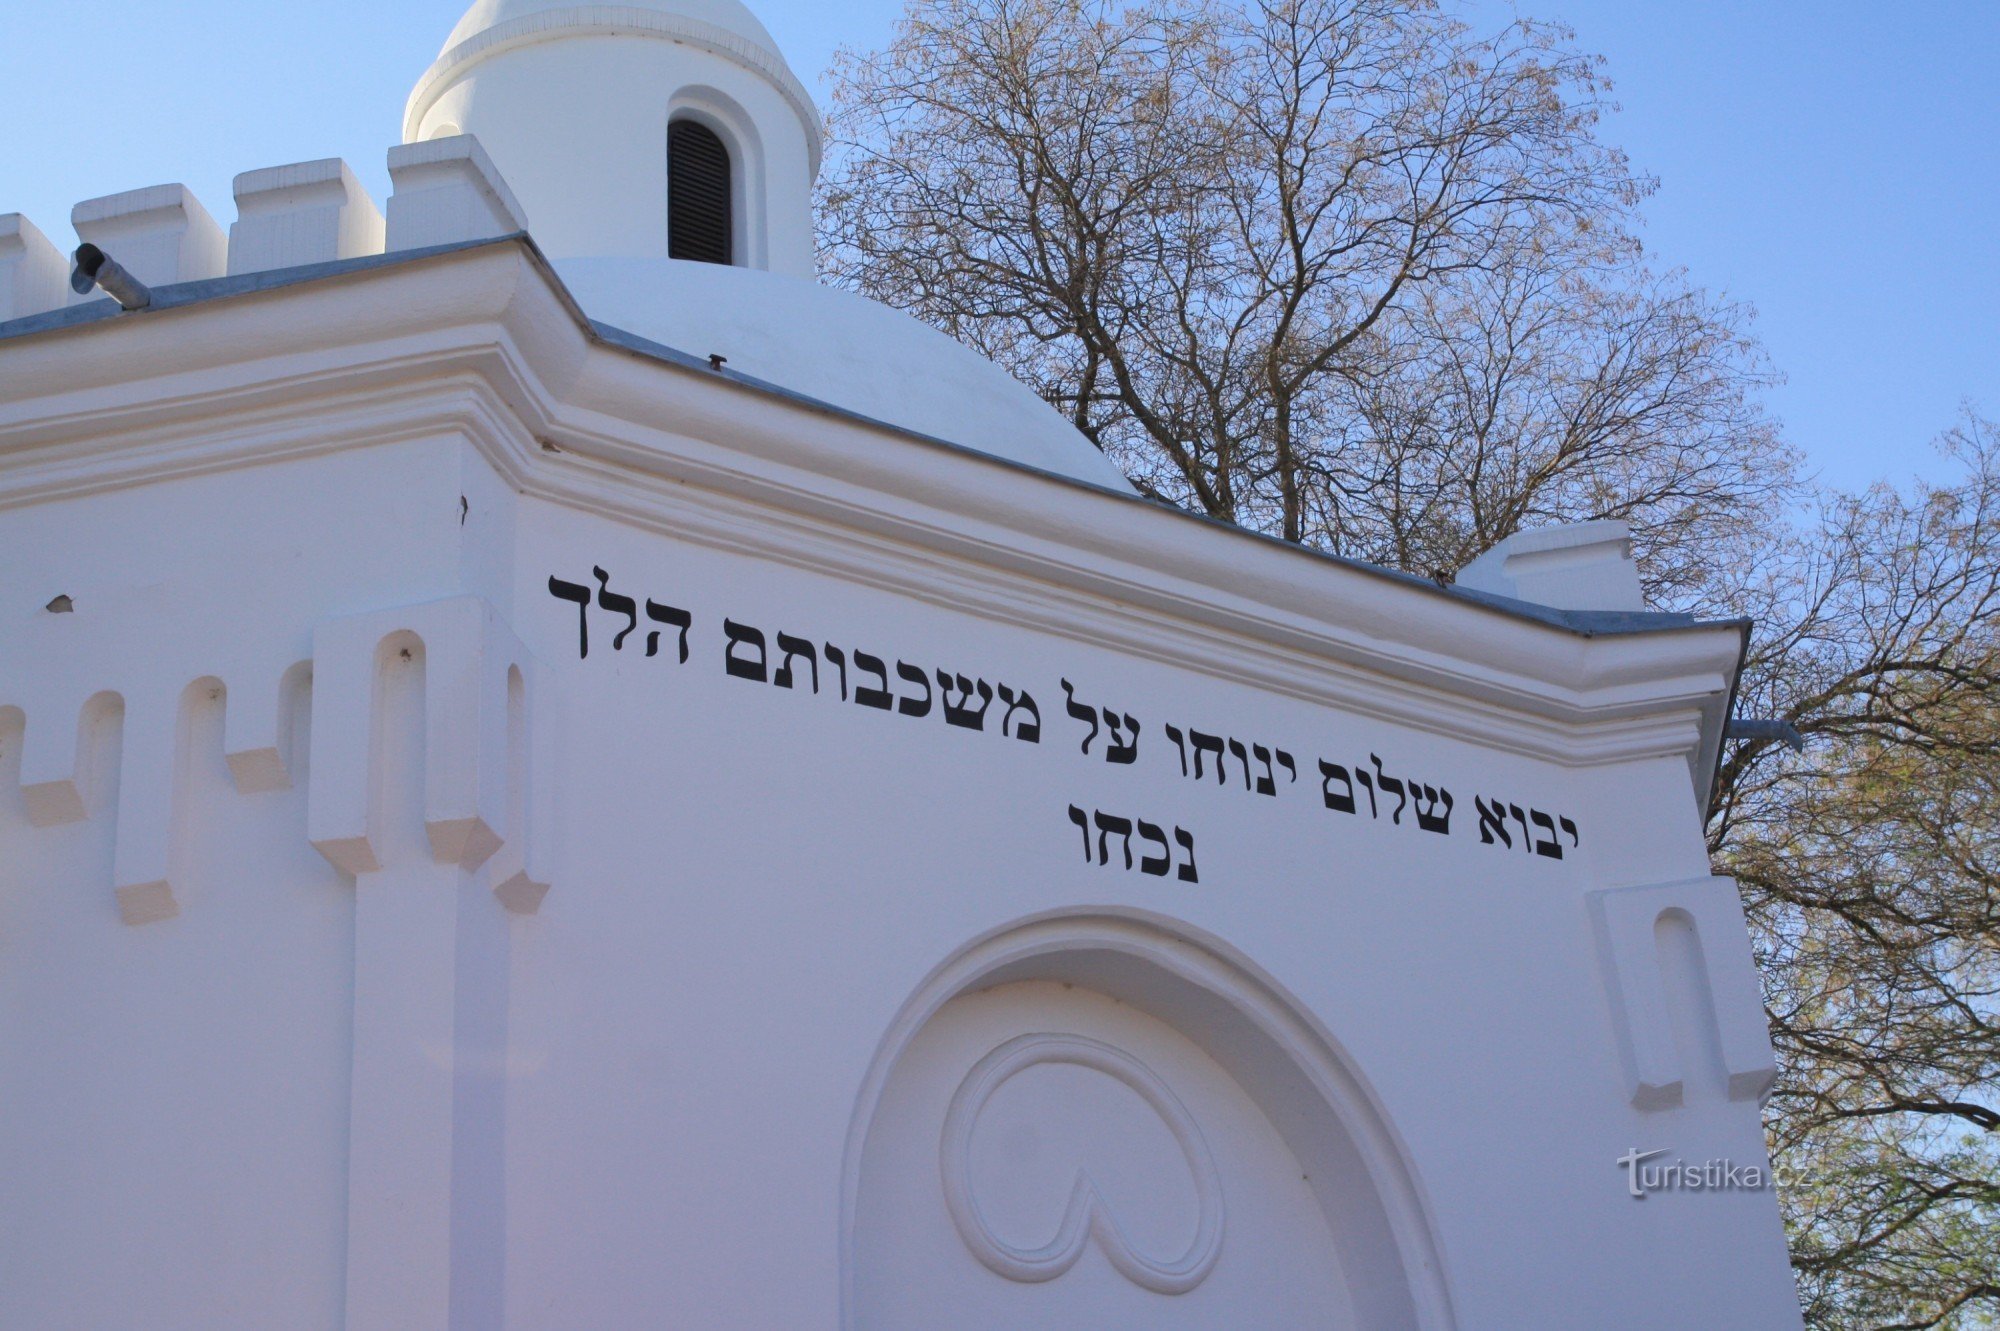 Detalje af synagogen